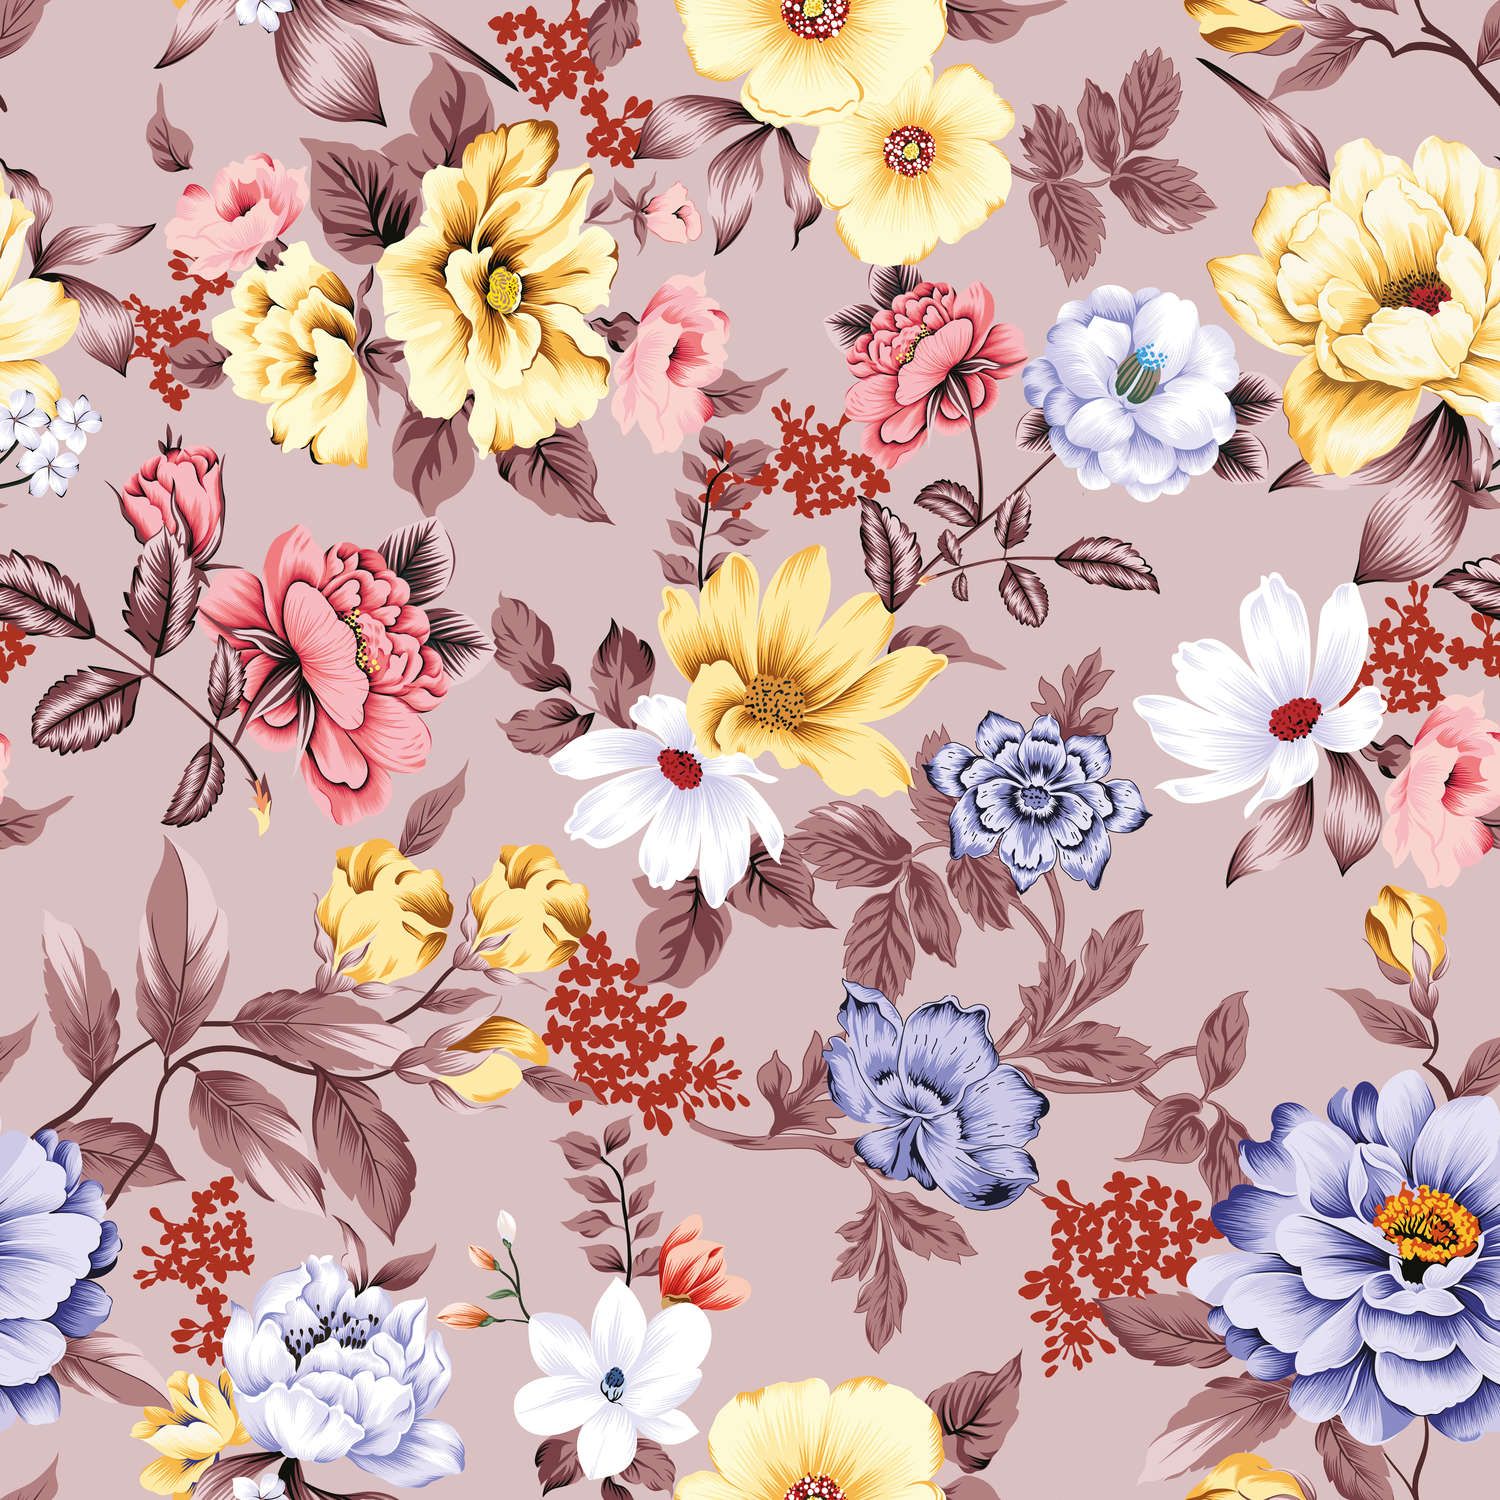             Fototapete floral mit Blüten und Blättern – Glattes & perlmutt-schimmerndes Vlies
        